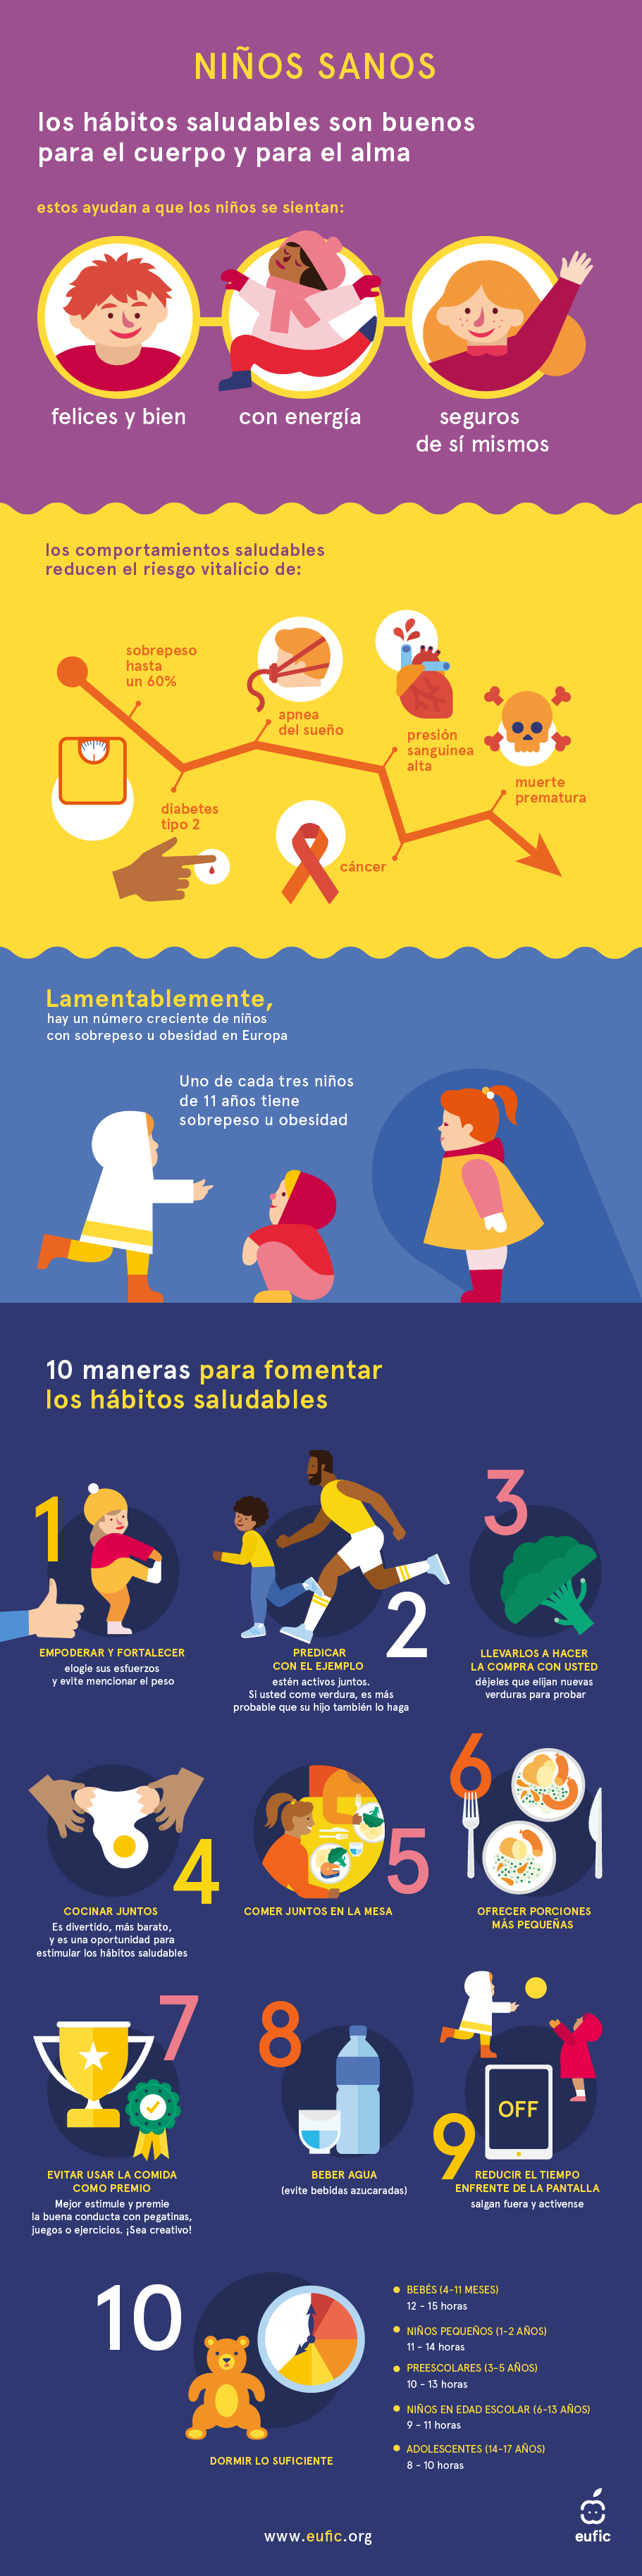 Infografía sobre obesidad infantil que ofrece 10 consejos con base científica para fomentar hábitos saludables entre los niños